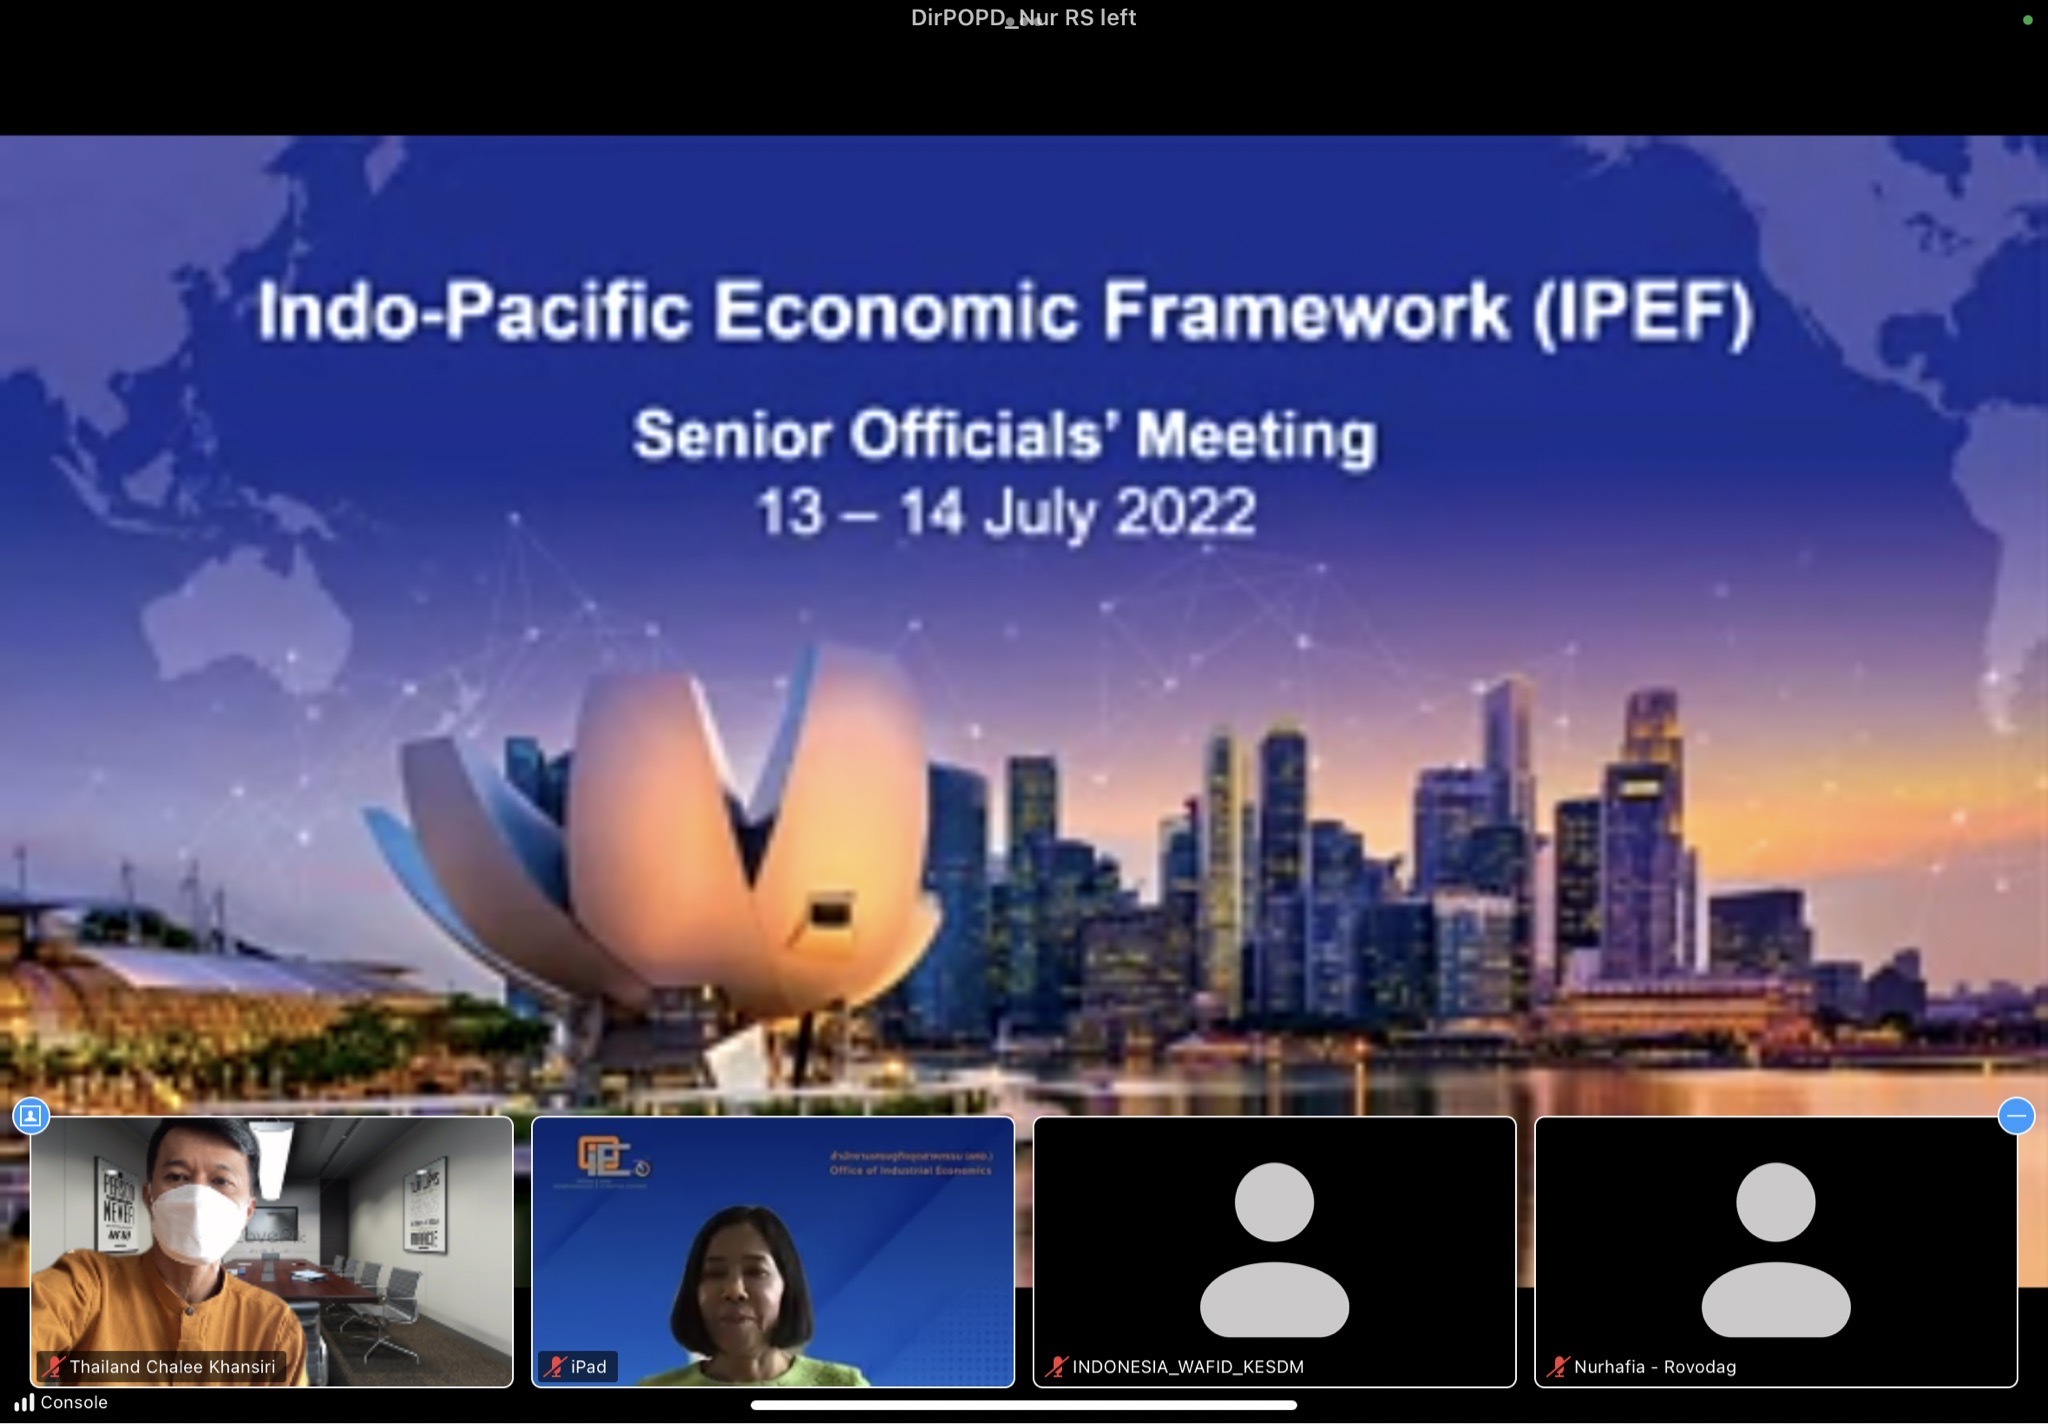 การประชุมกรอบความร่วมมือด้านเศรษฐกิจอินโด-แปซิฟิก (Indo-Pacific Economic Framework : IPEF) 